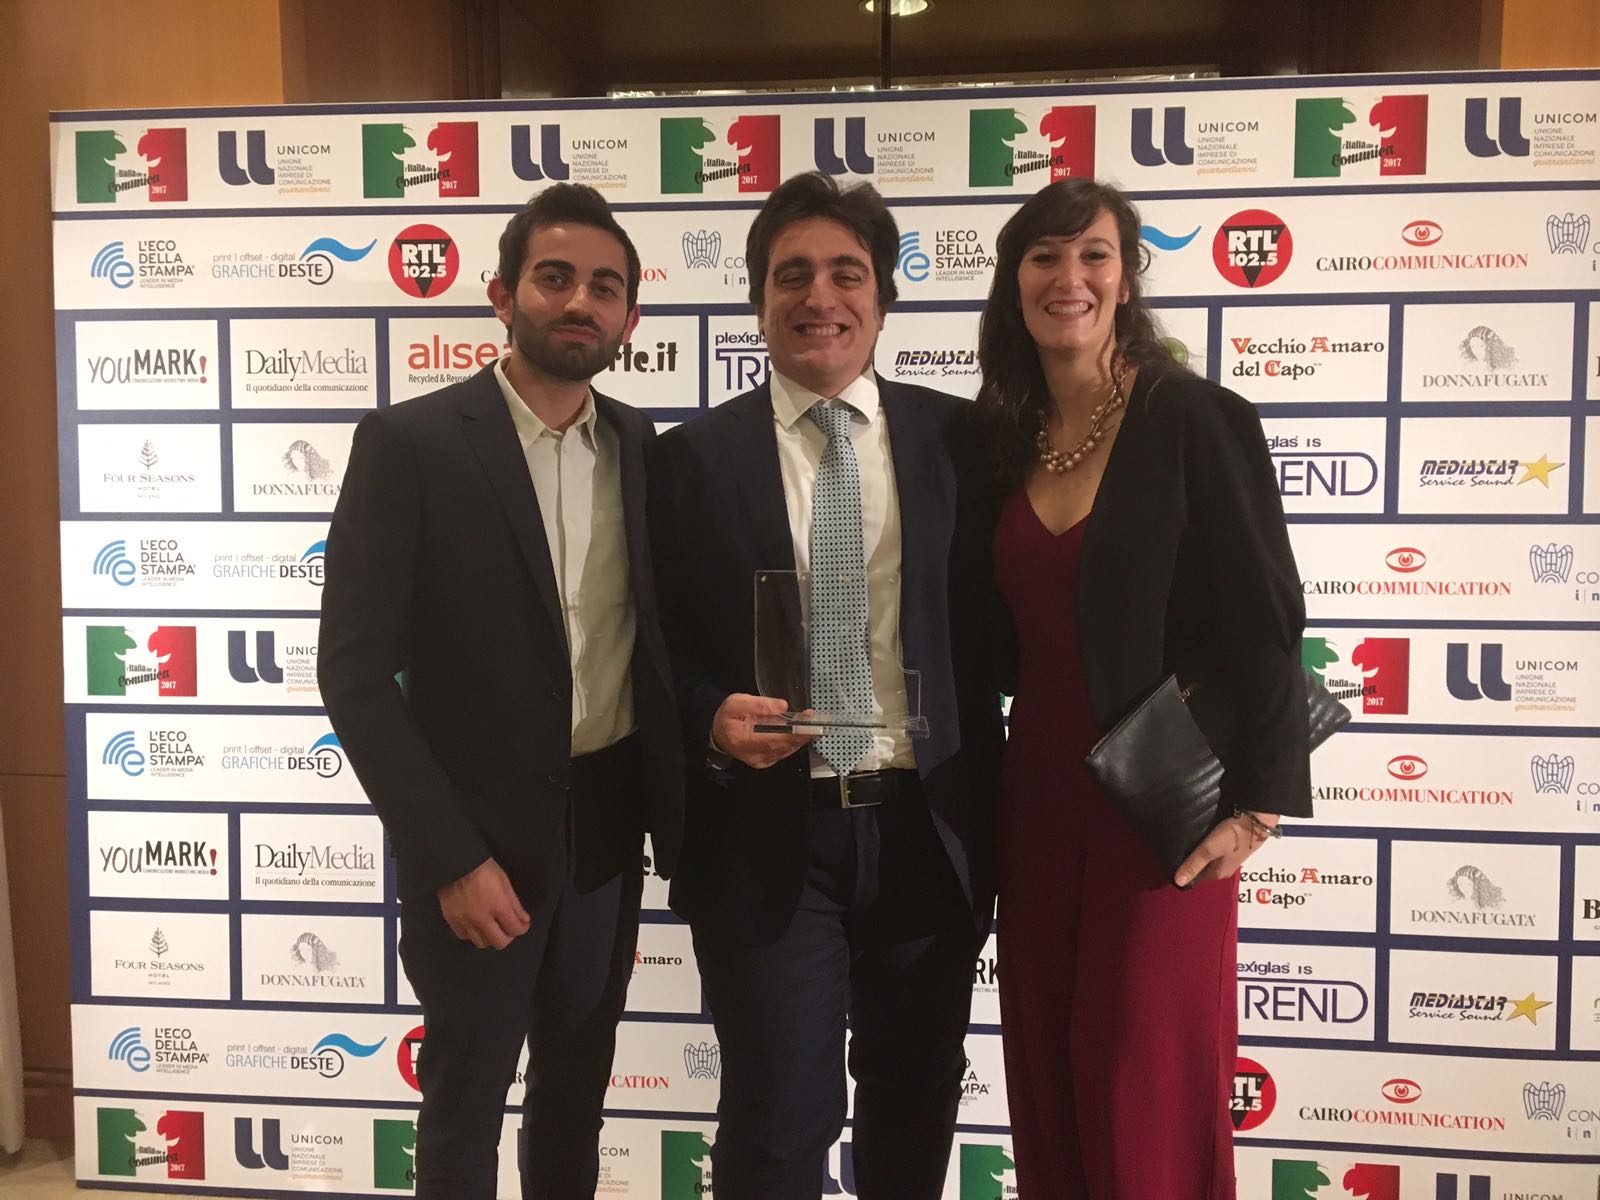 Unicom premia Delmonte: vinto il riconoscimento “L'Italia che comunica le proprie Agenzie”